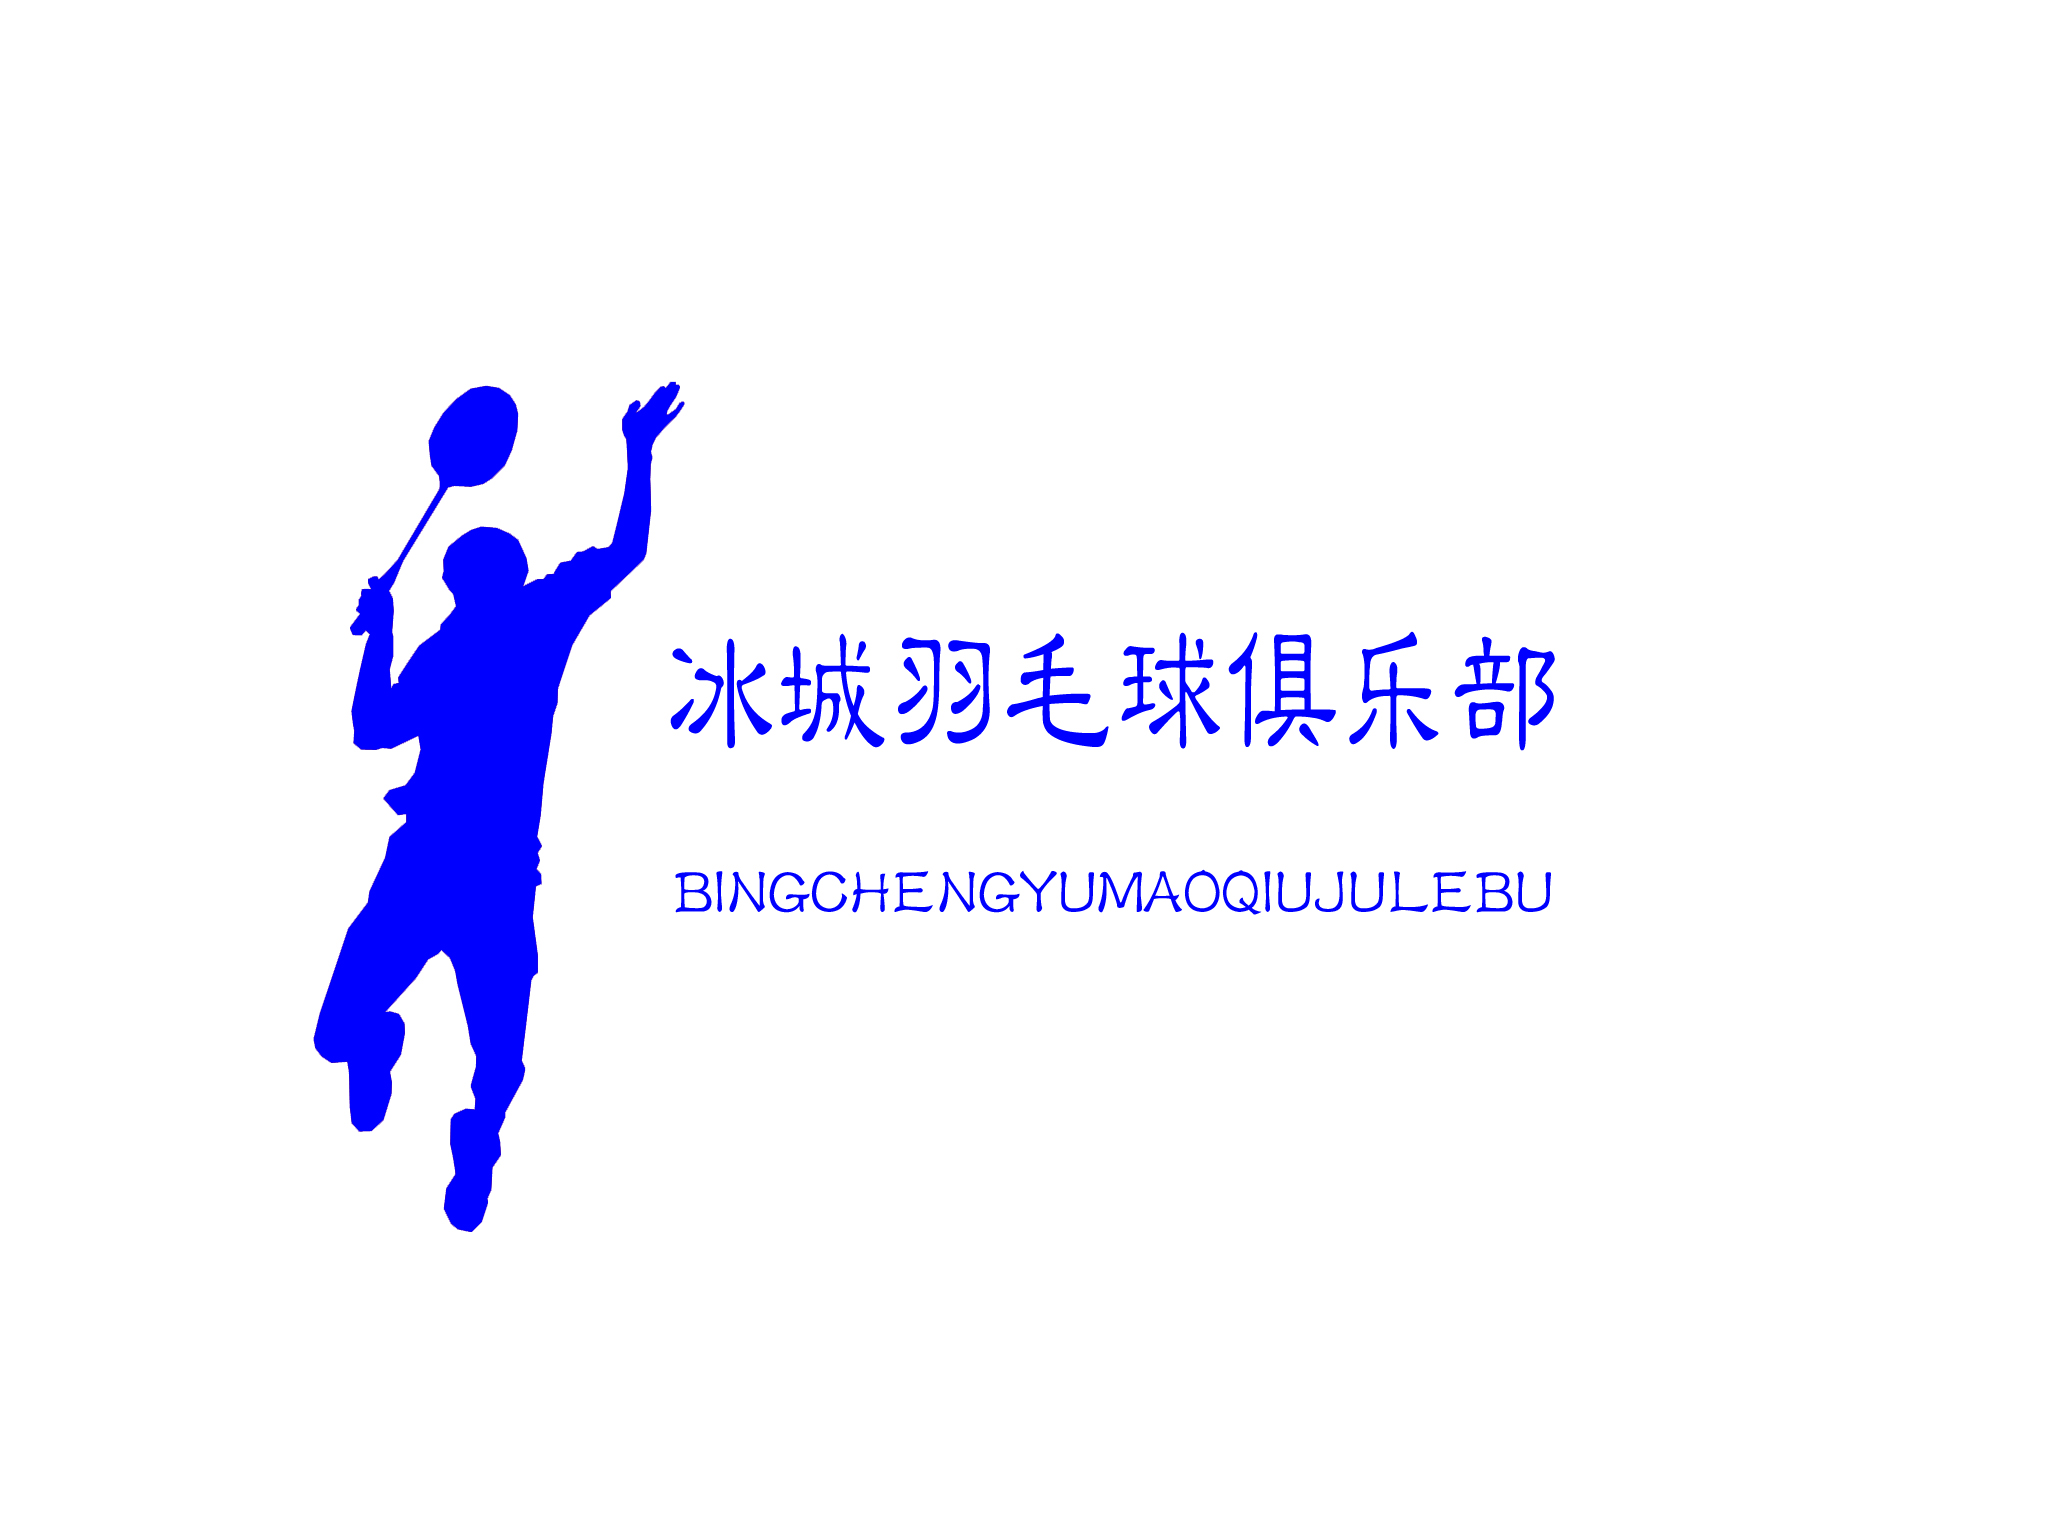 羽毛球logo设计说明图片